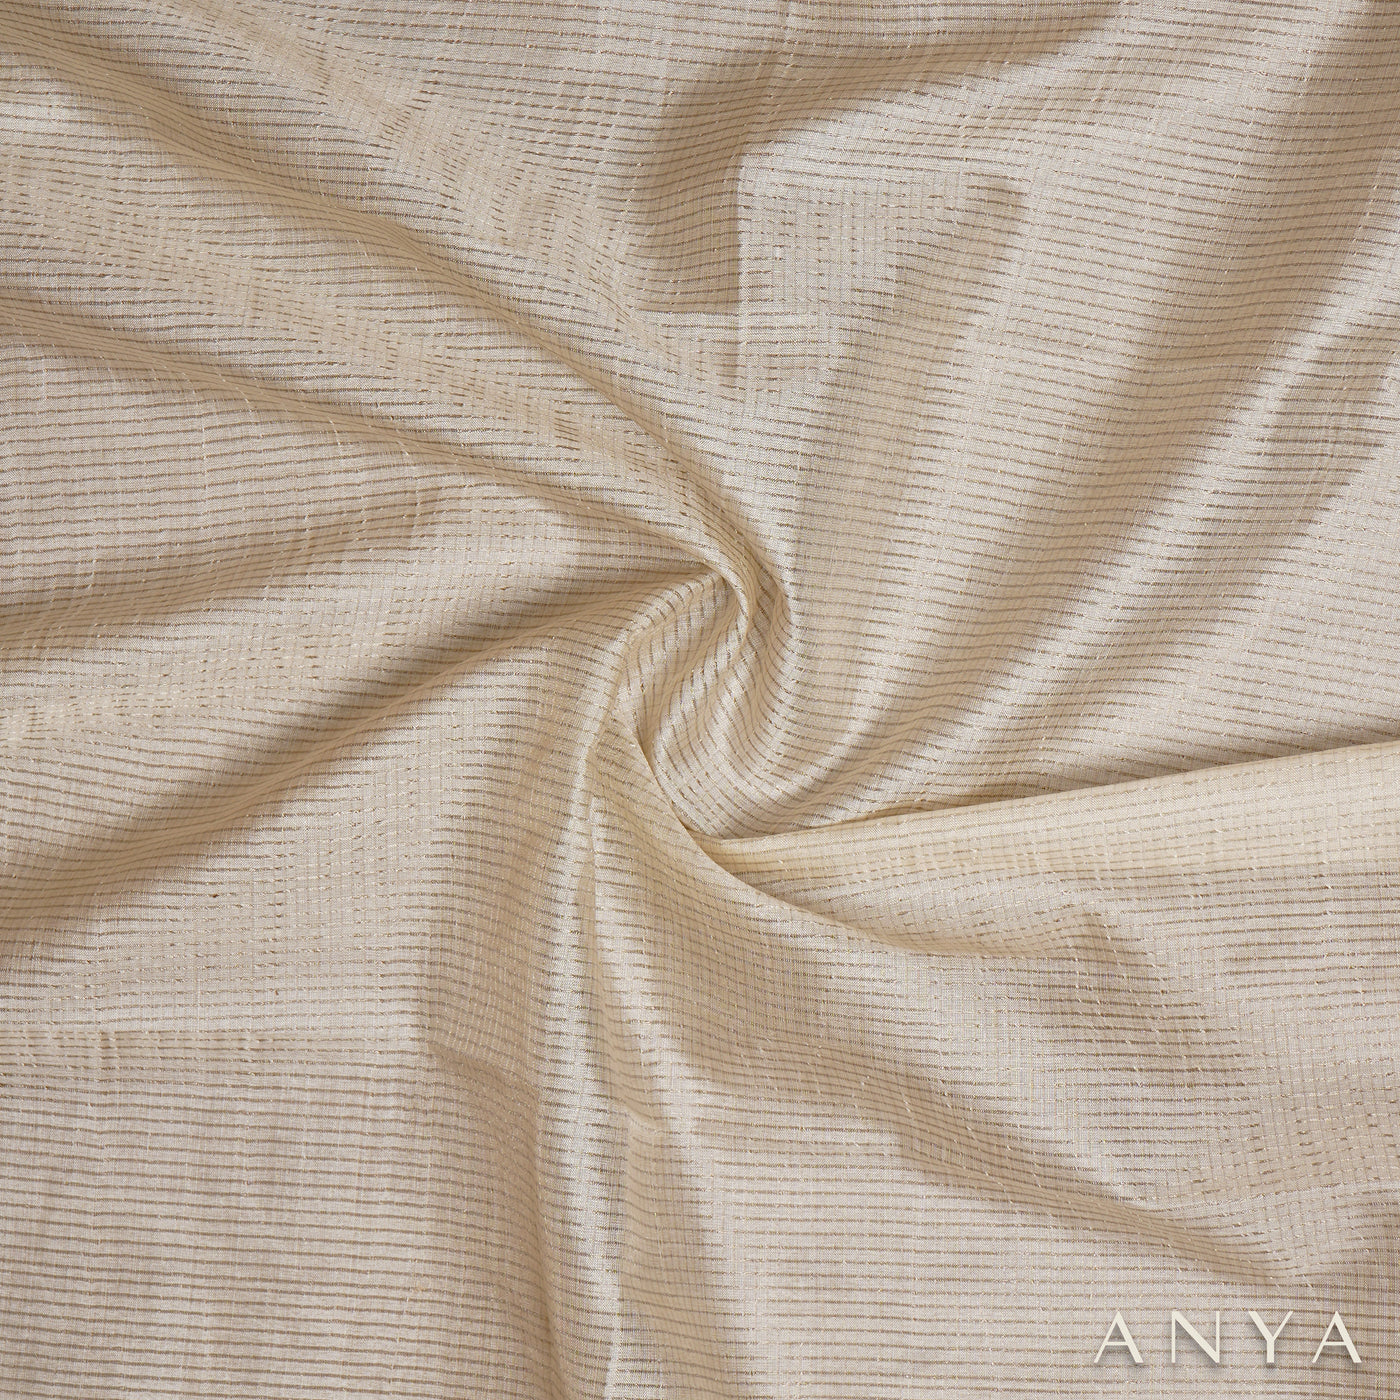 Off White Tussar Silk Fabric with Small Zari Checks Design